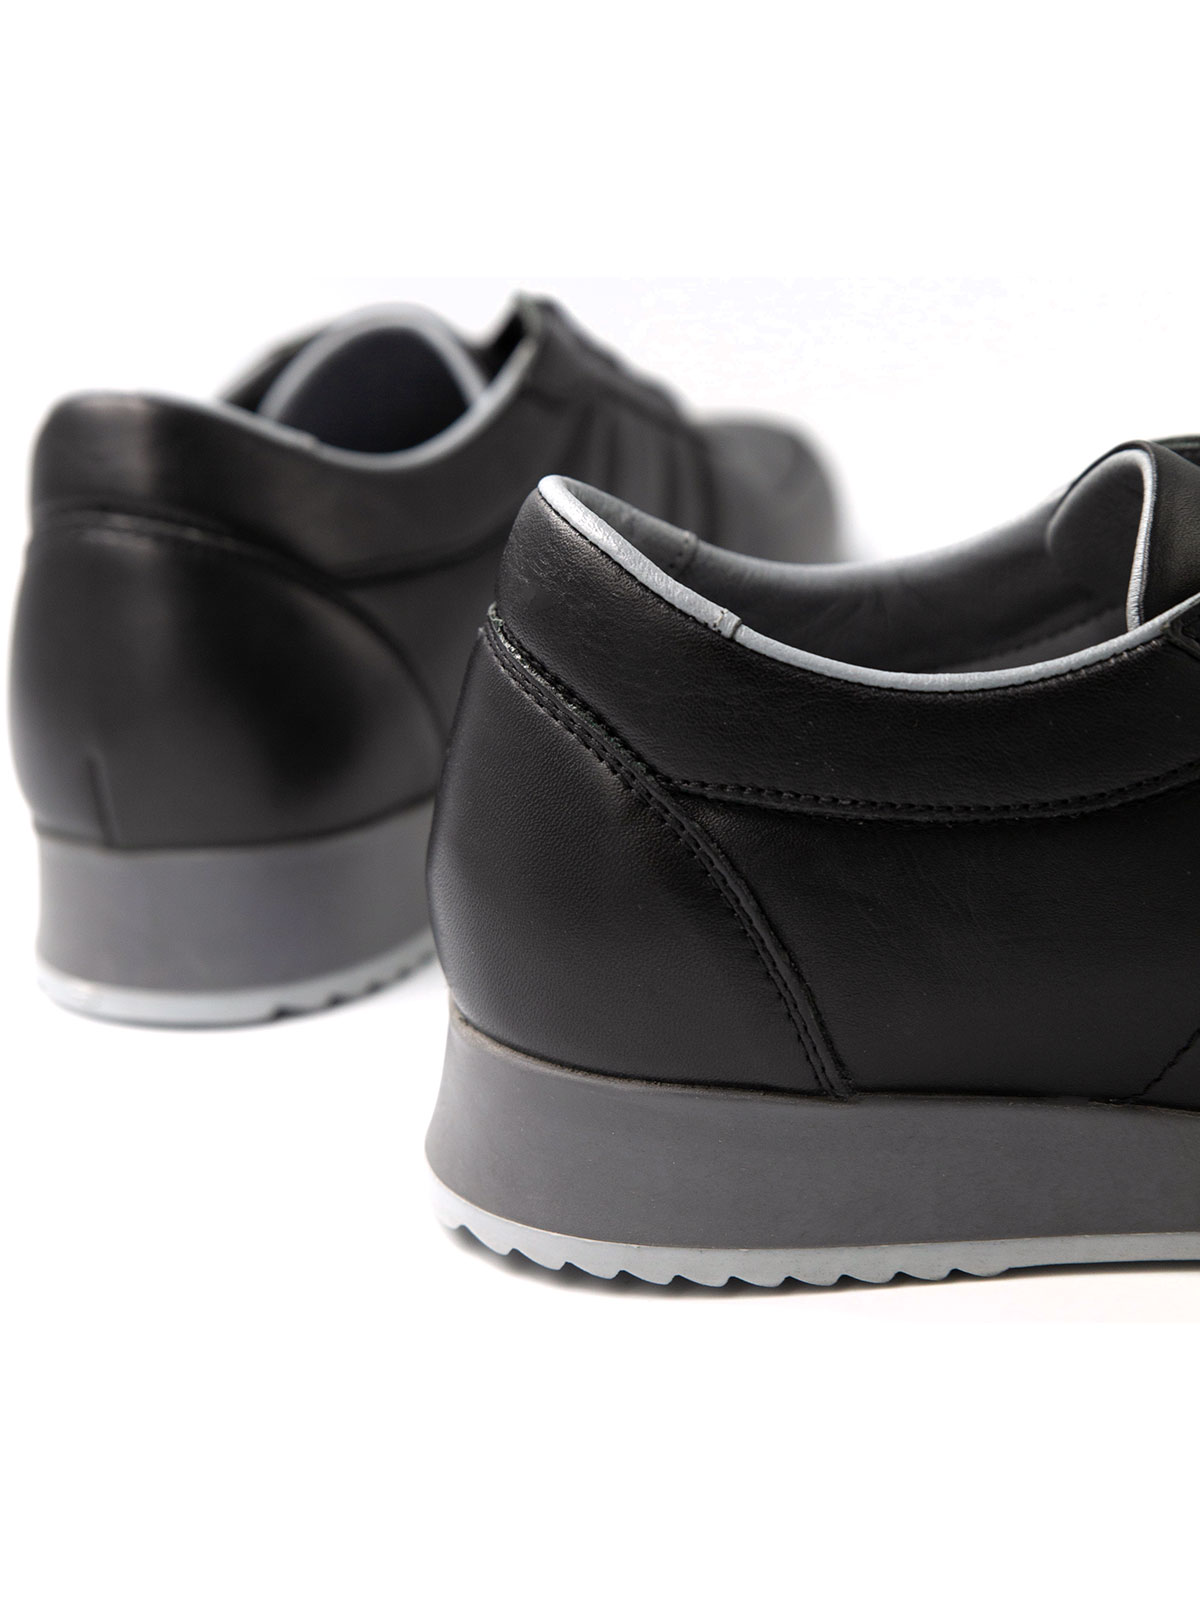 Αθλητικά μαύρα δερμάτινα παπούτσια - 81100 - € 41.62 img4